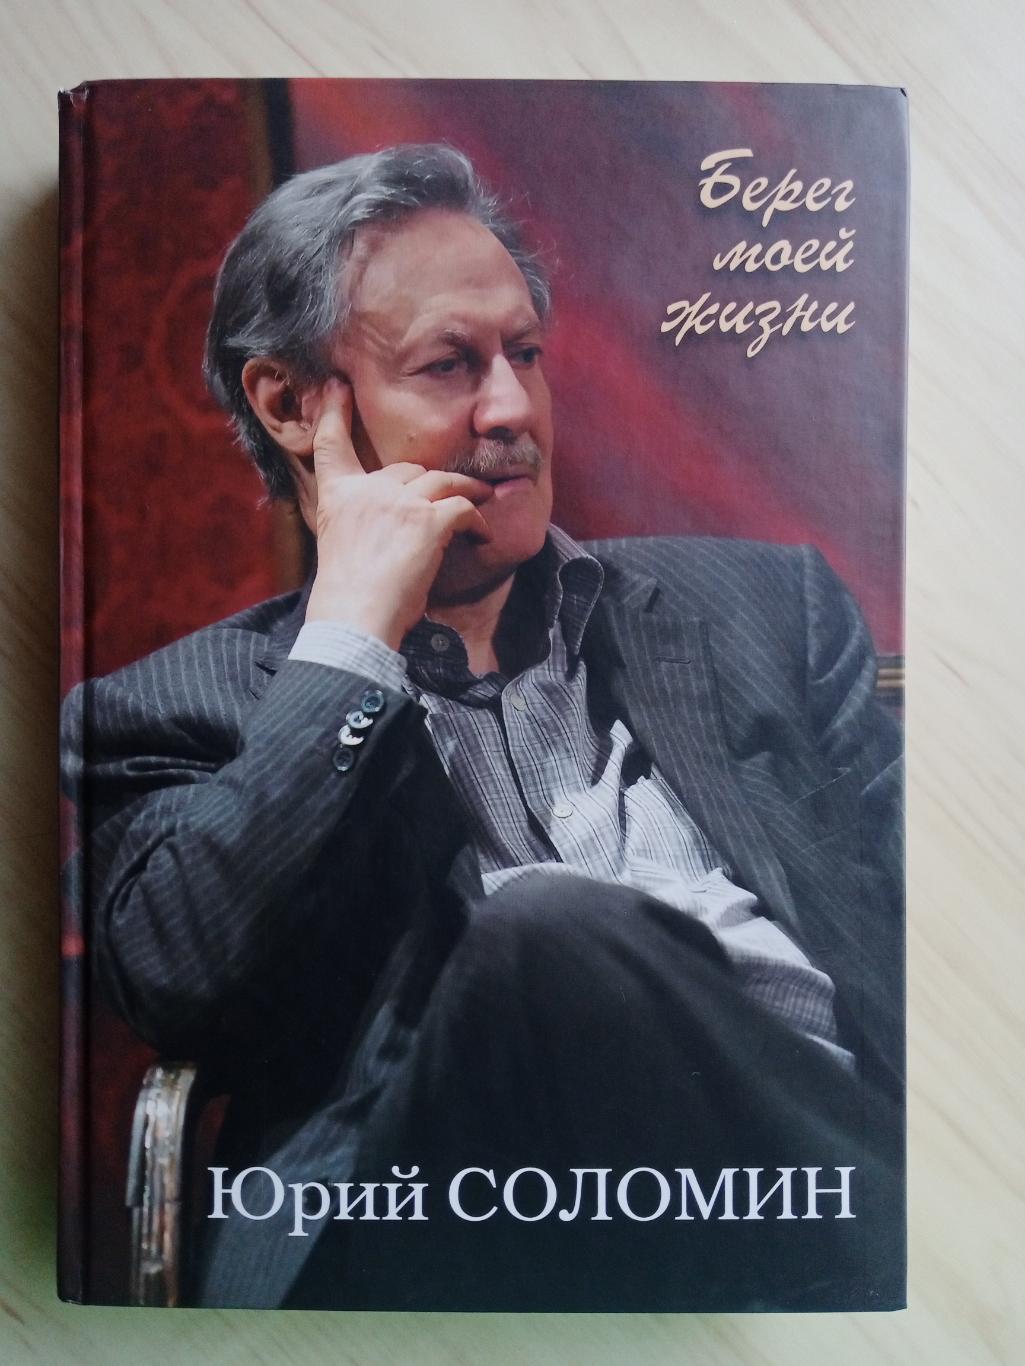 Книга Юрий Соломин Берег моей жизни с автографом Юрия Соломина